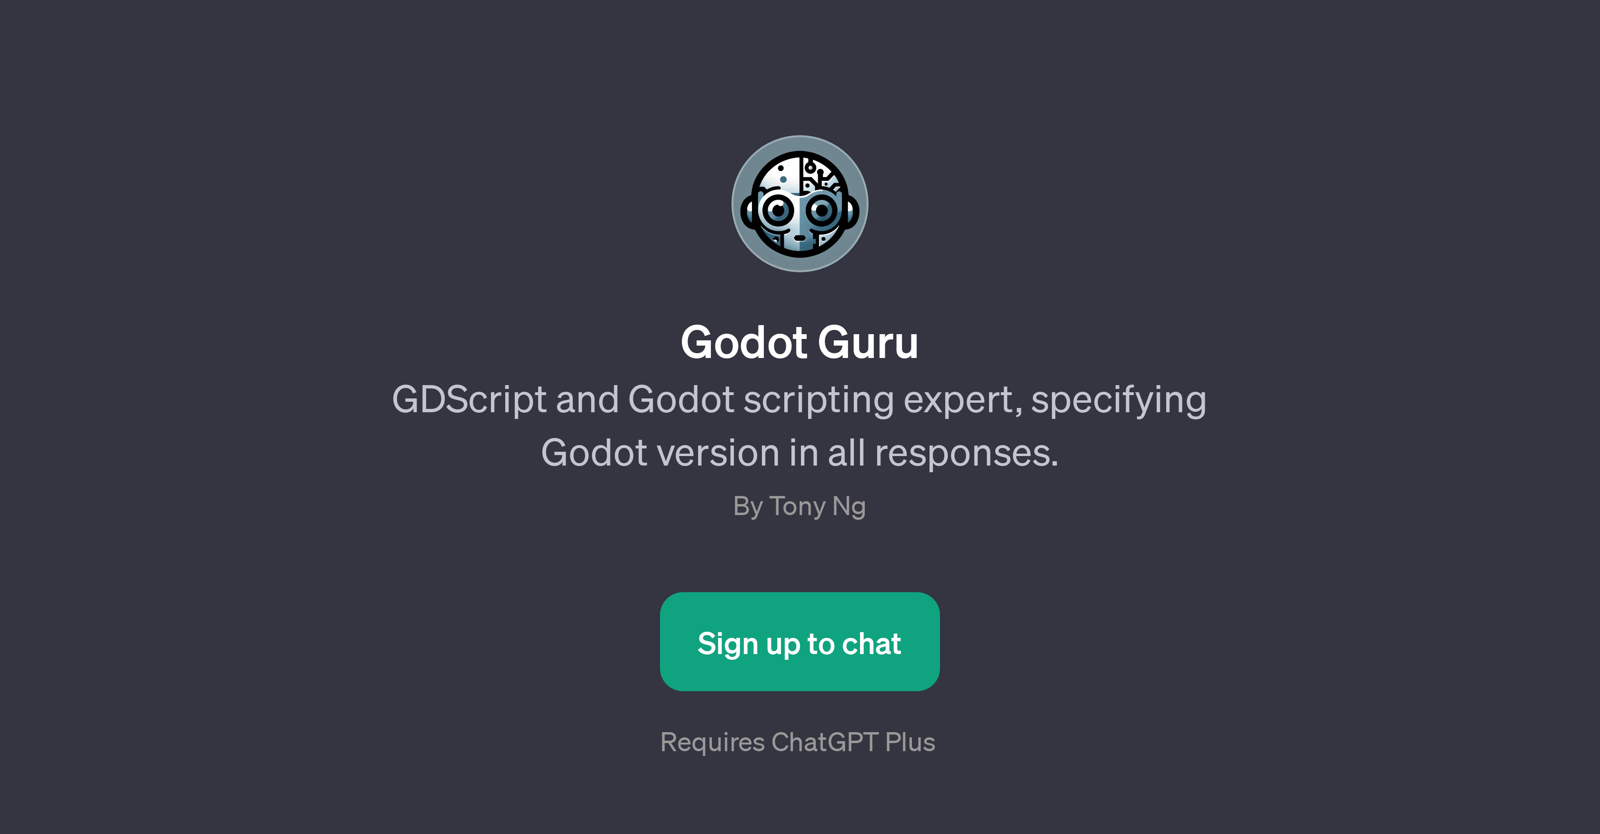 Godot Guru website